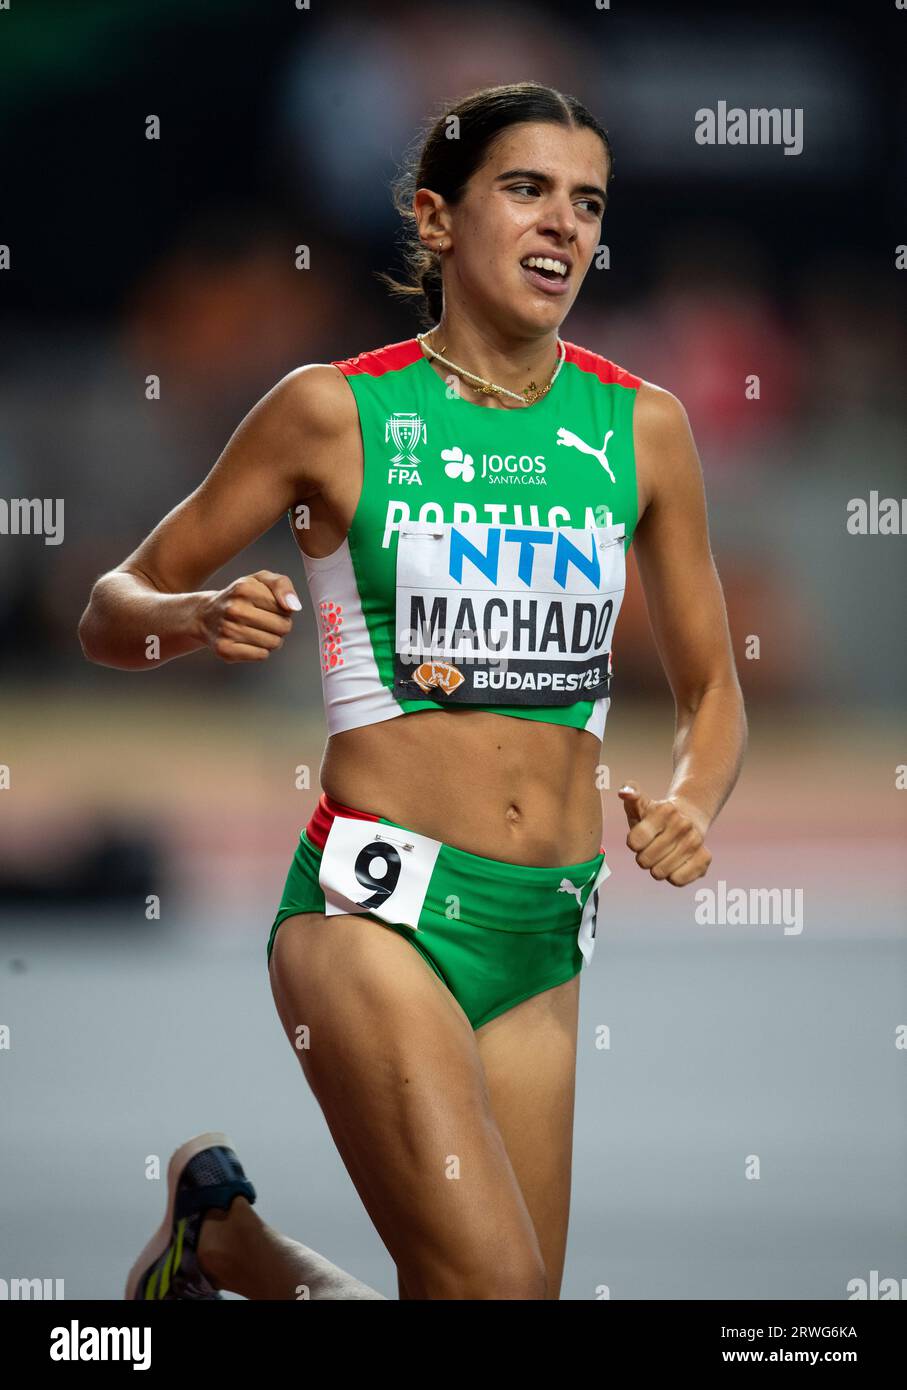 Mariana Machado aus Portugal, die am fünften Tag bei den Leichtathletik-Weltmeisterschaften im Nationalen Leichtathletik-Zentrum in Budapest in den 5000-Meter-Läufen antrat Stockfoto